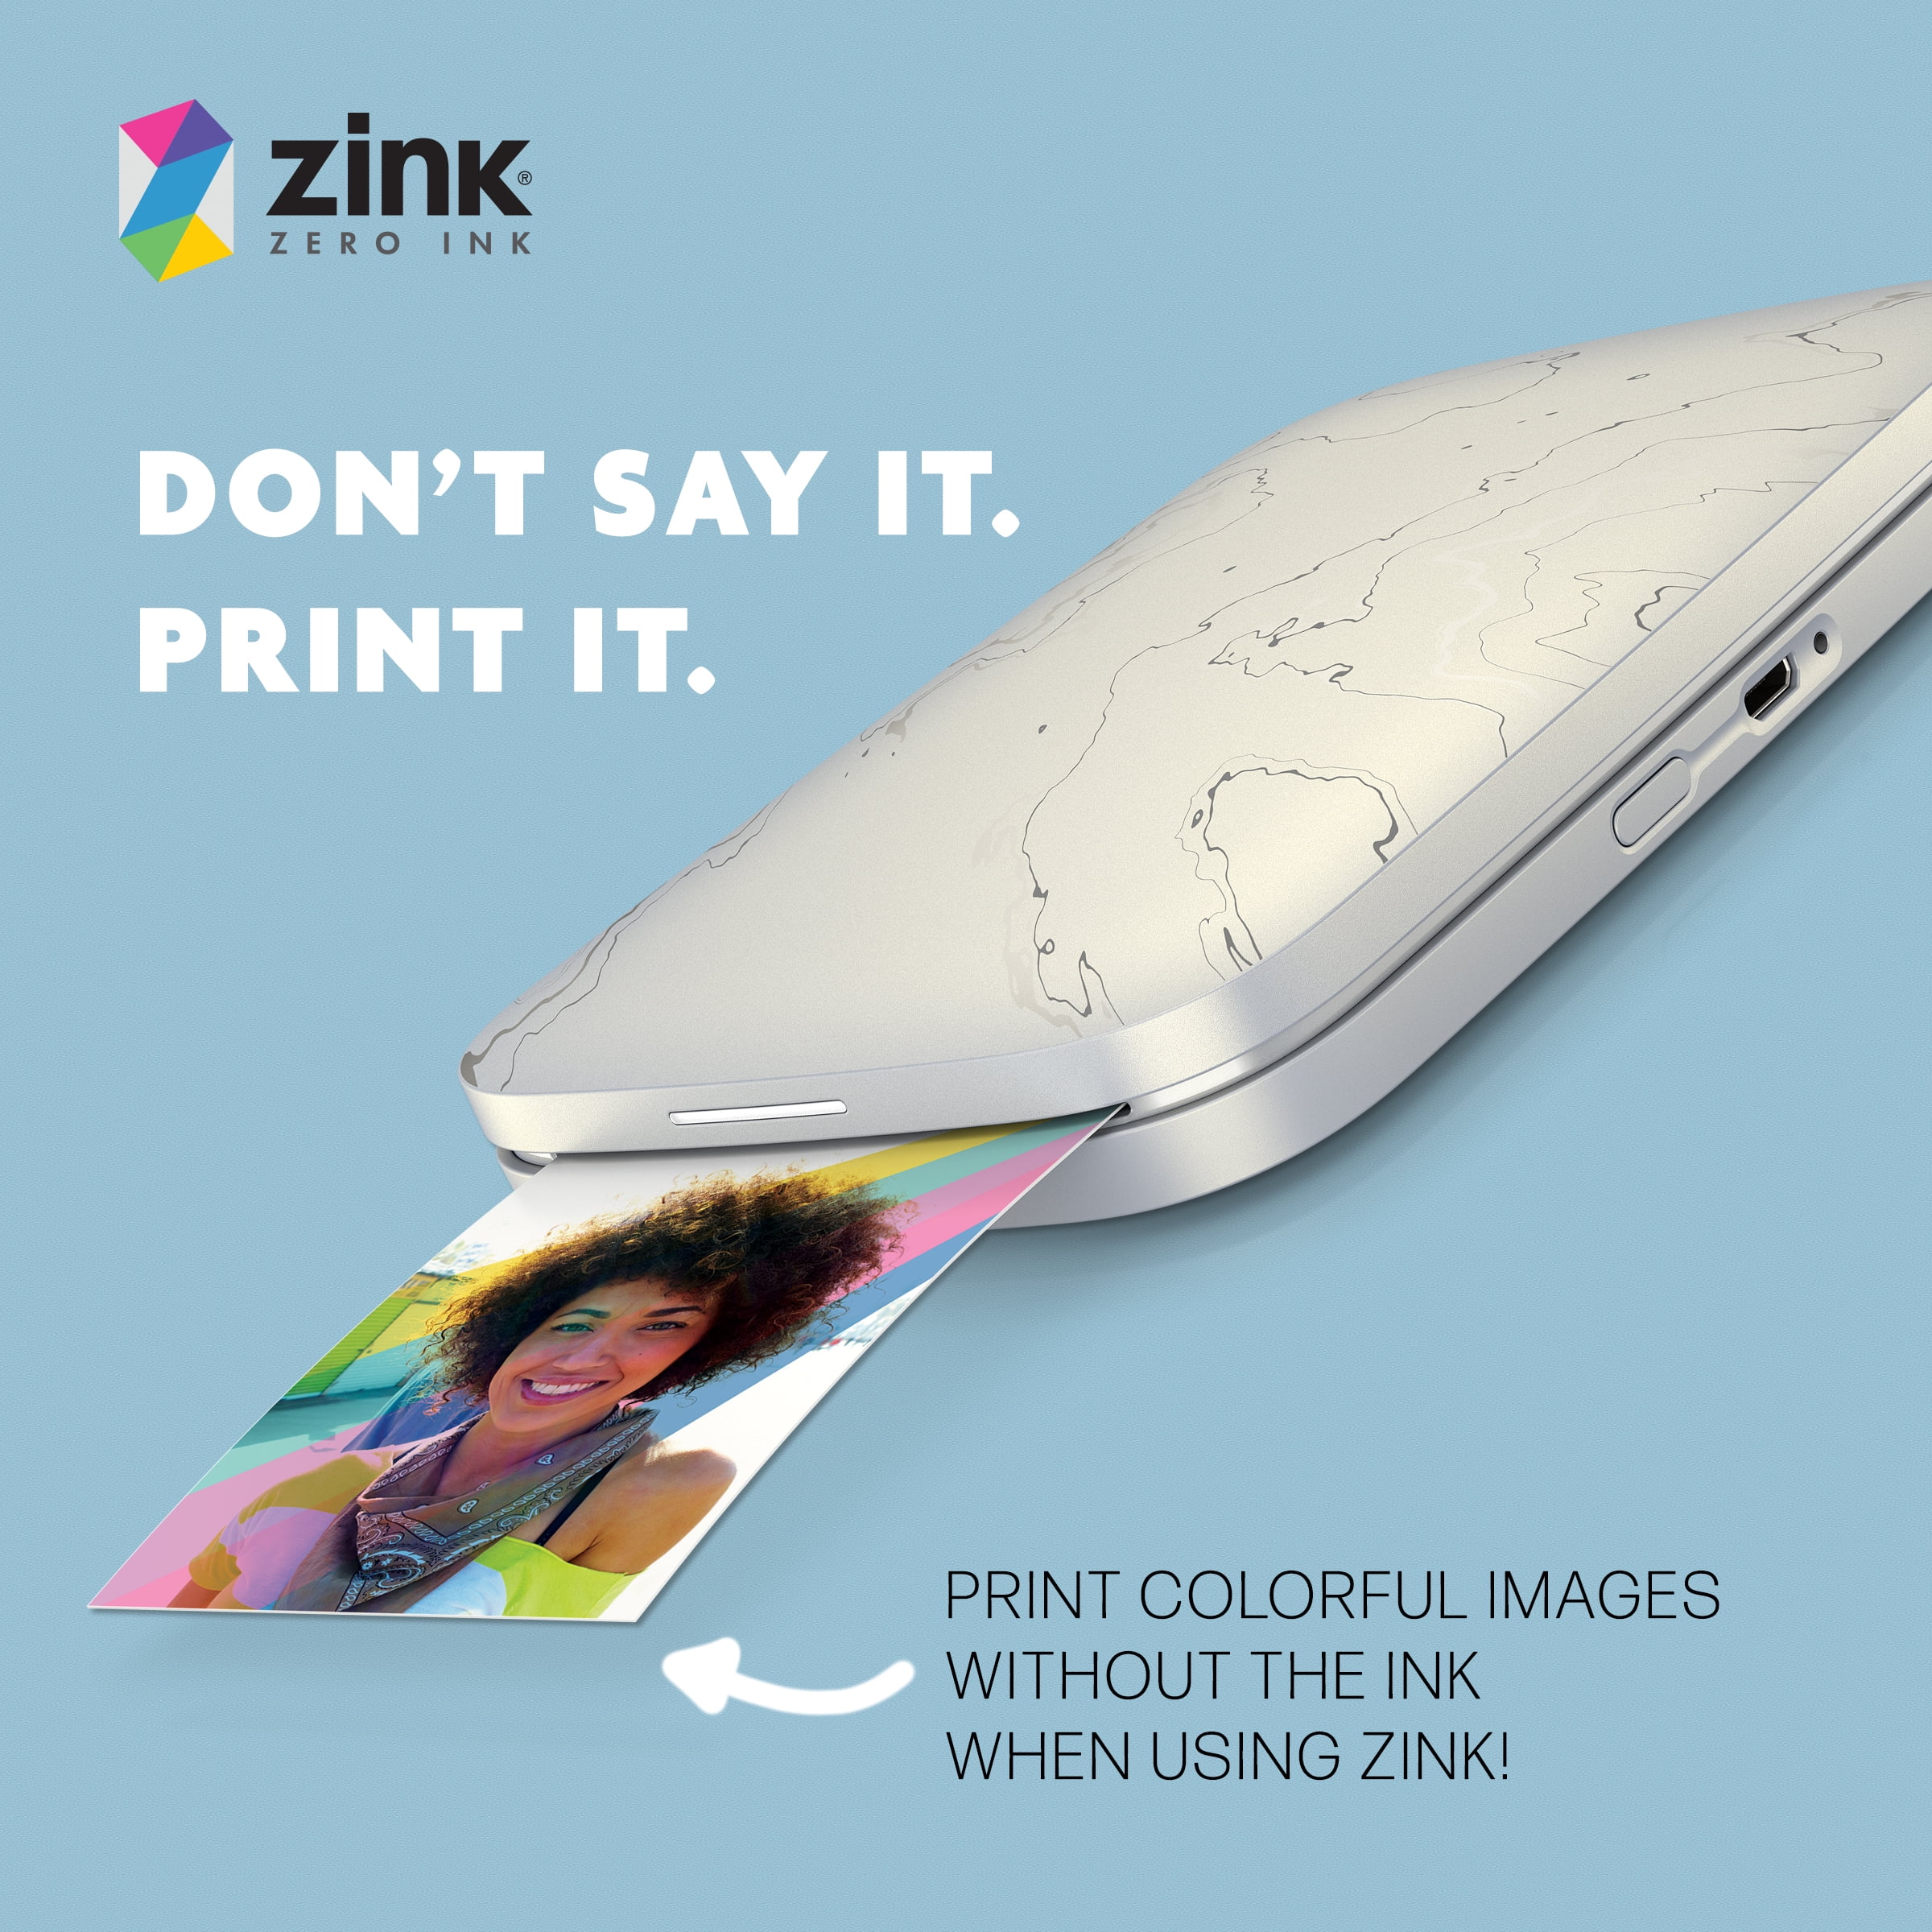 HP ZINK Photo Paper (1DE39A) au meilleur prix sur